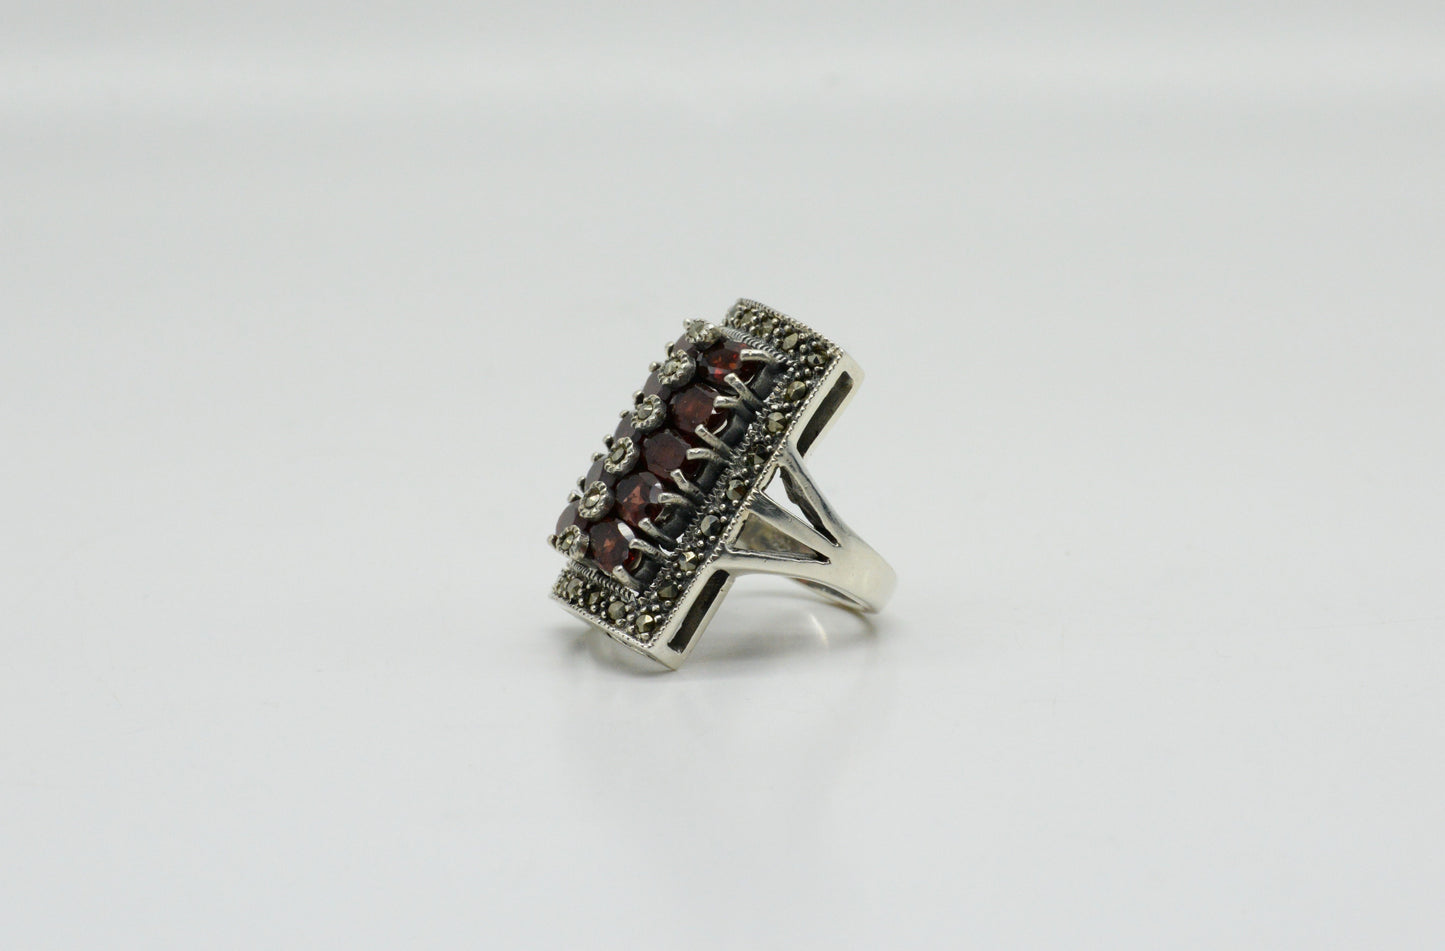 Vintage Sterling Silver 5.0cttw Garnet Rectangular Ring, Size 6 - 13.2g